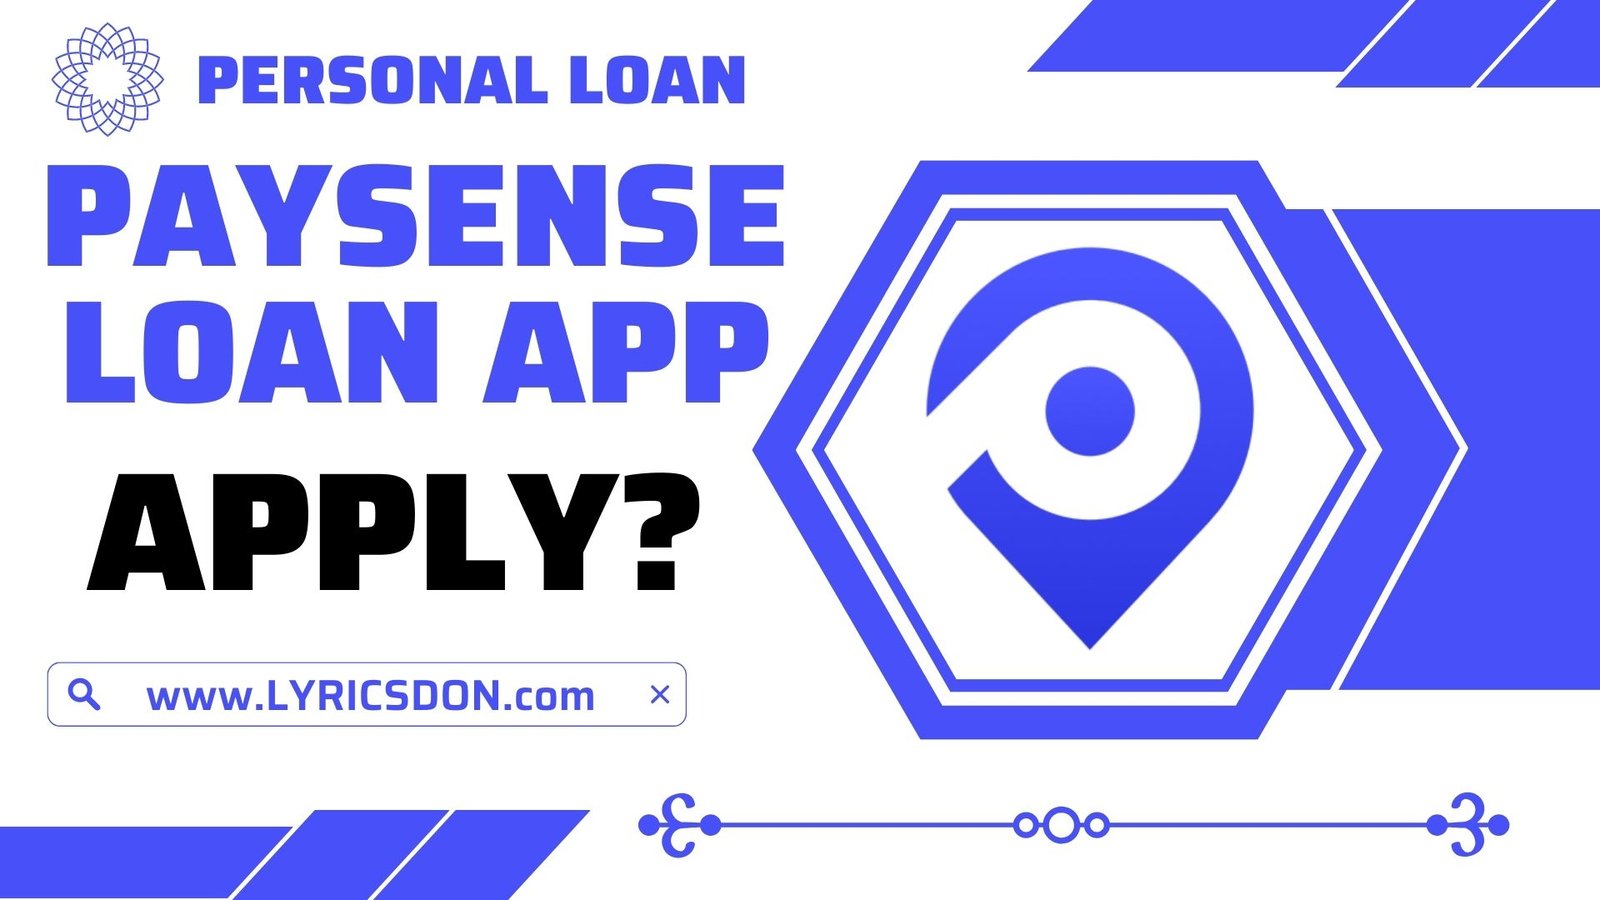 PaySense Loan App से लोन कैसे लें?